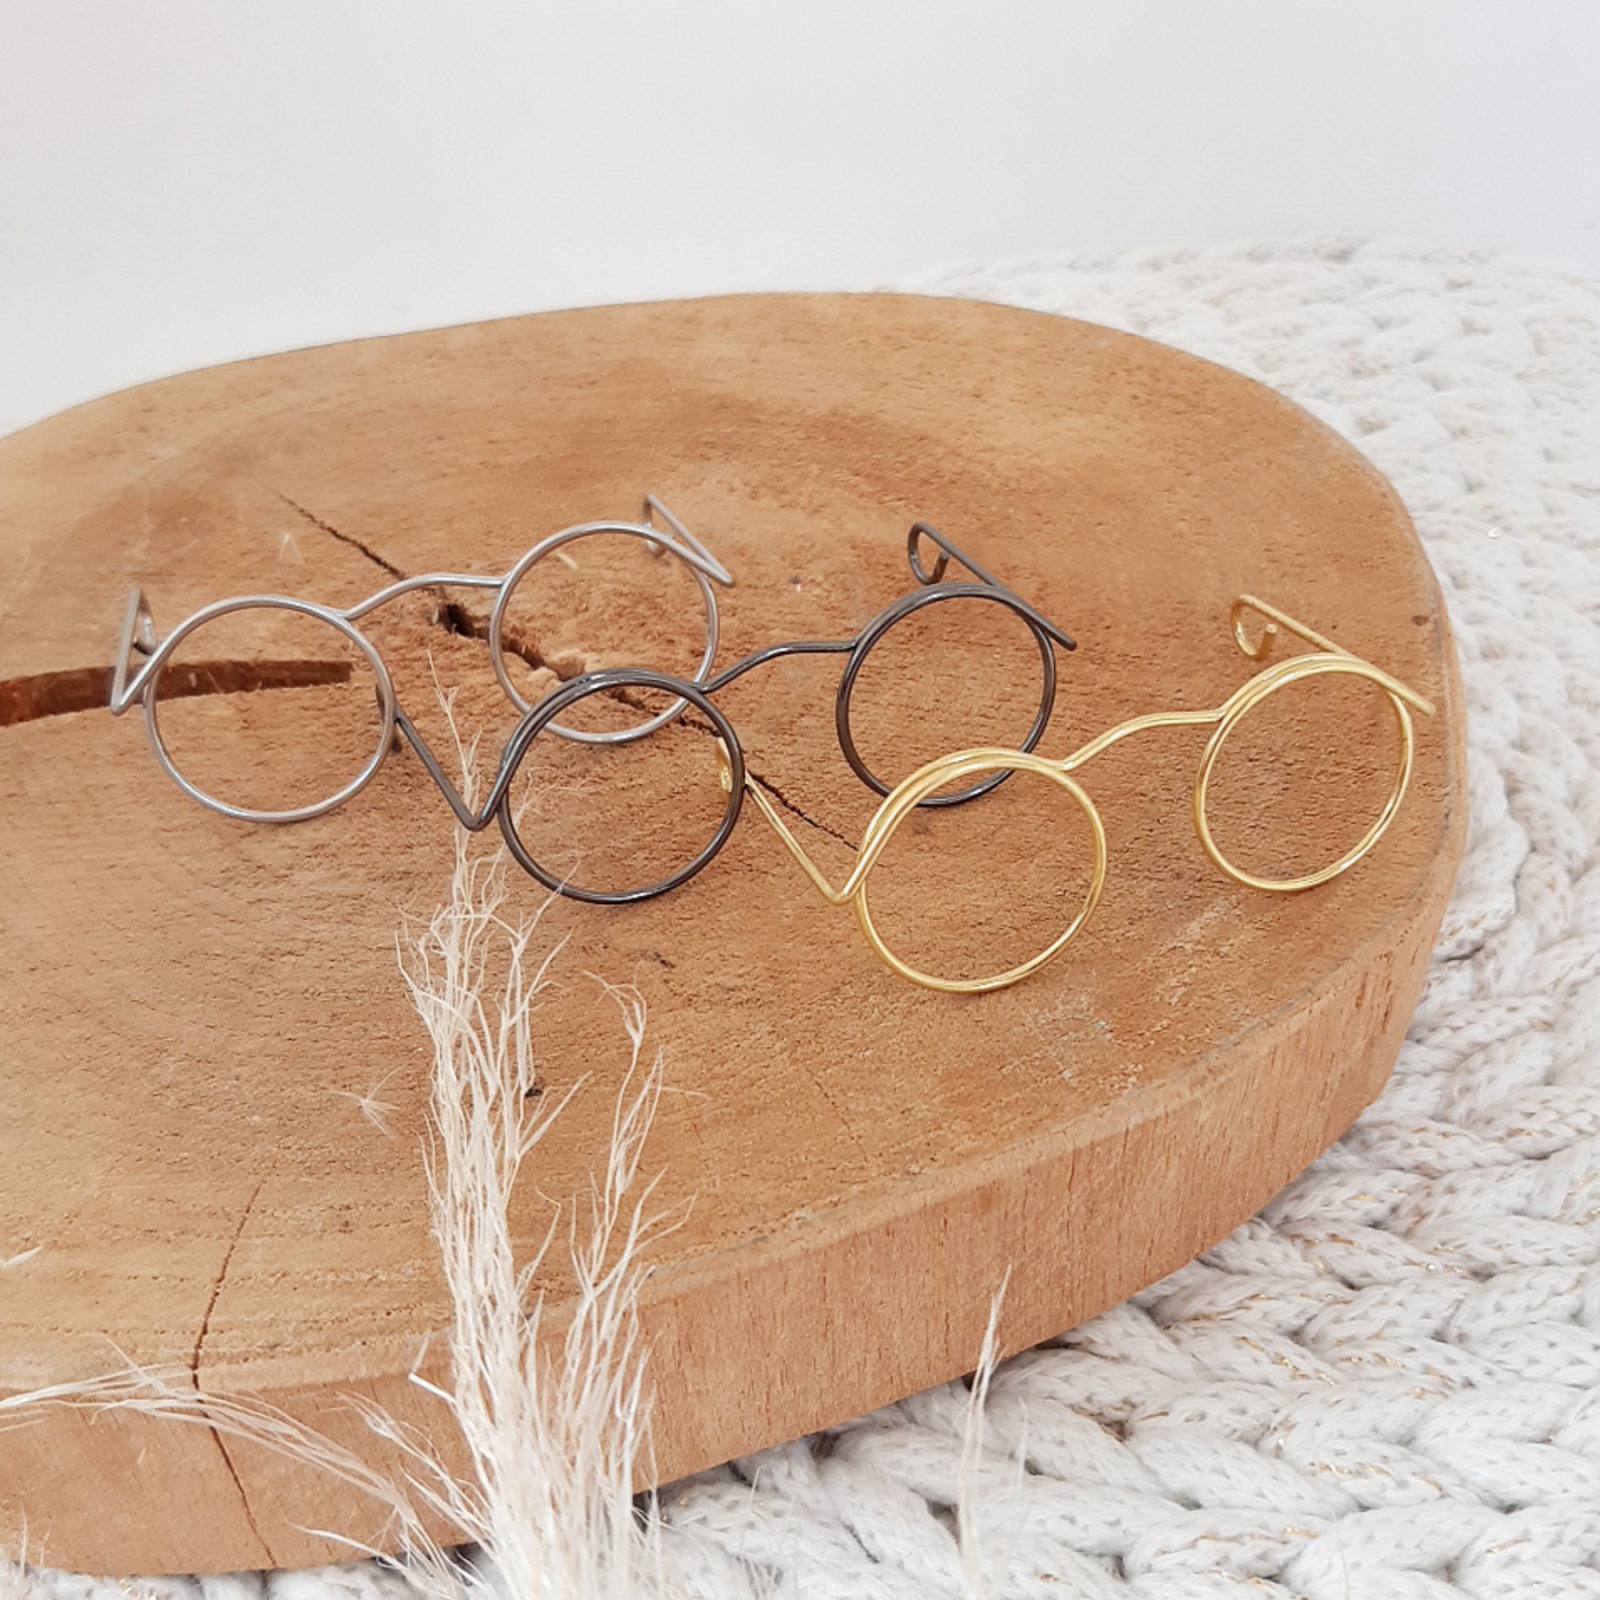 Drahtbrille: Kultige Mini-Brille für Amigurumis - Puppenbrille für einen  kultigen Look bei deinen Amigurmis, Online Shop